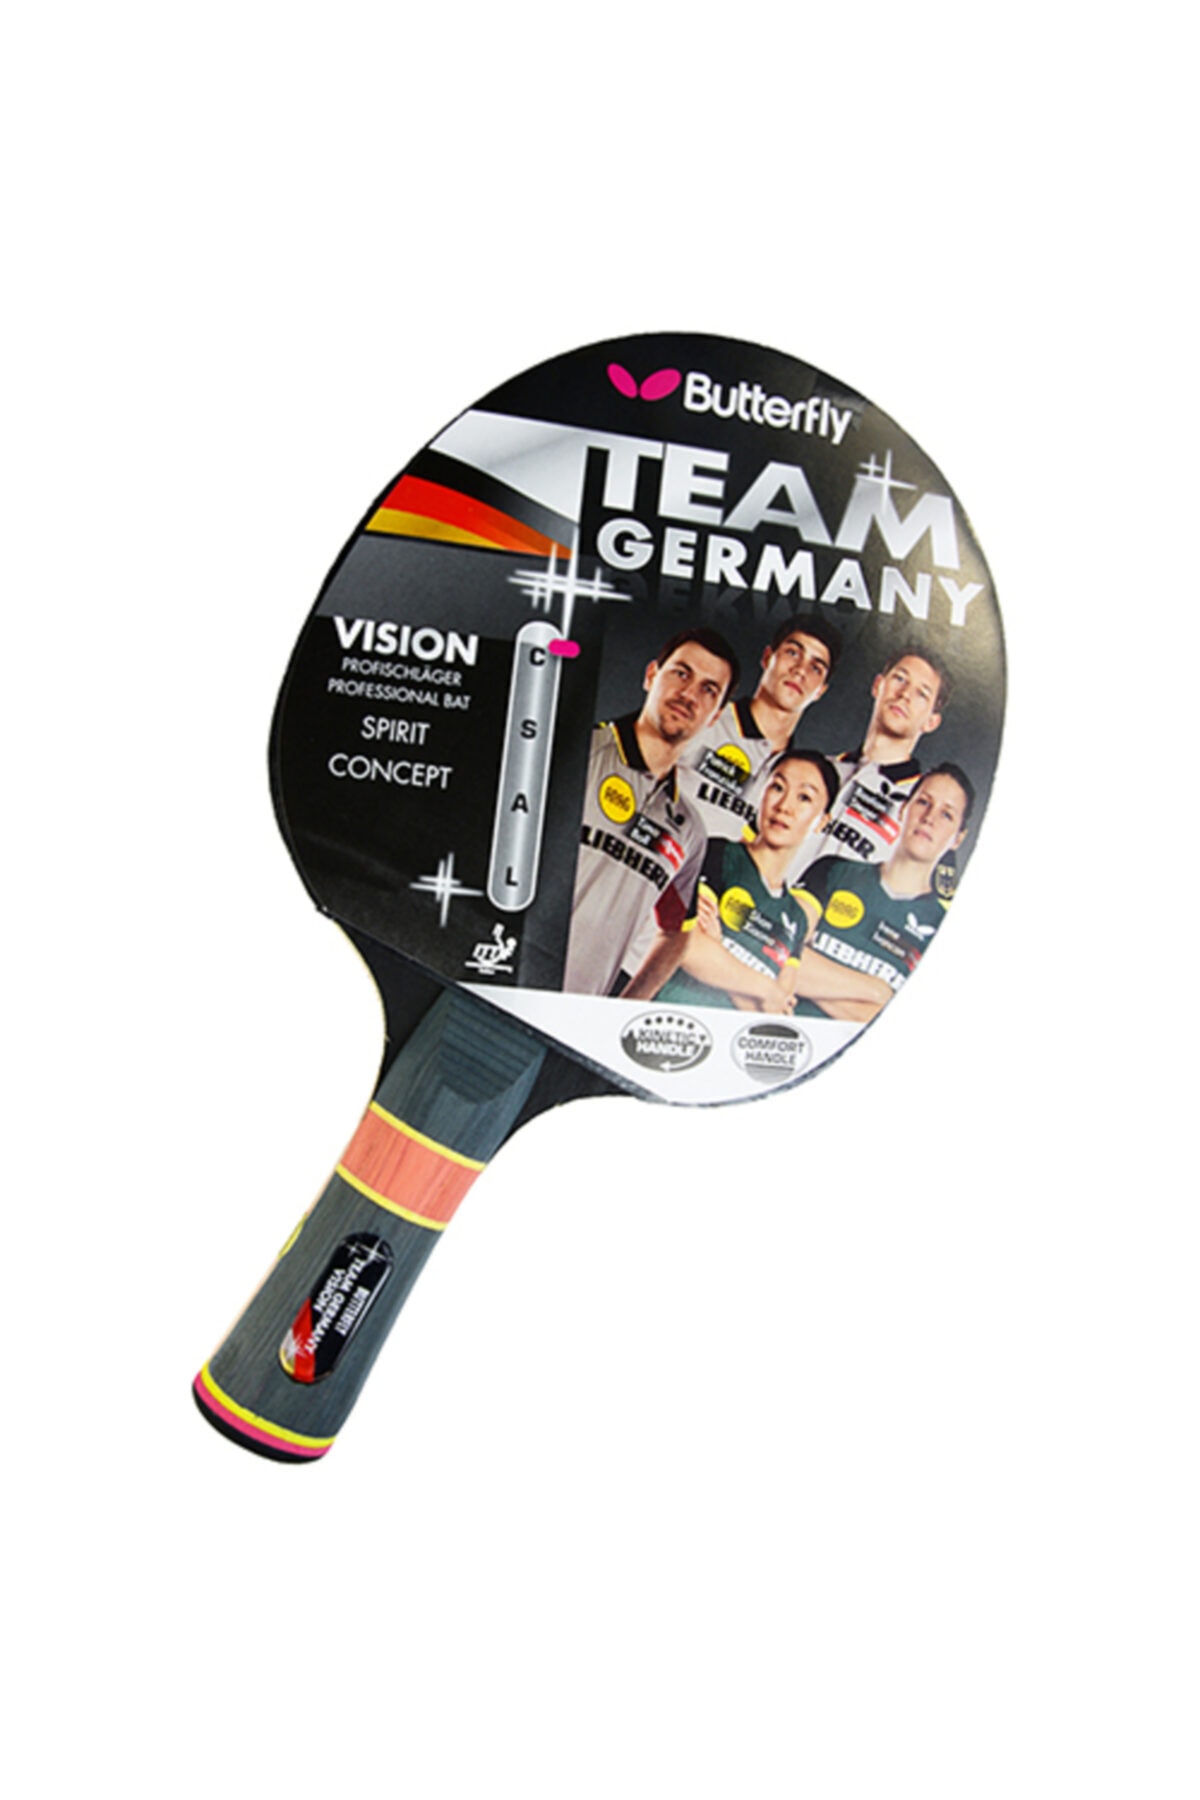 Berri confusion Penetrate BUTTERFLY Team Germany Vision Masa Tenisi Raketi Fiyatı, Yorumları -  TRENDYOL